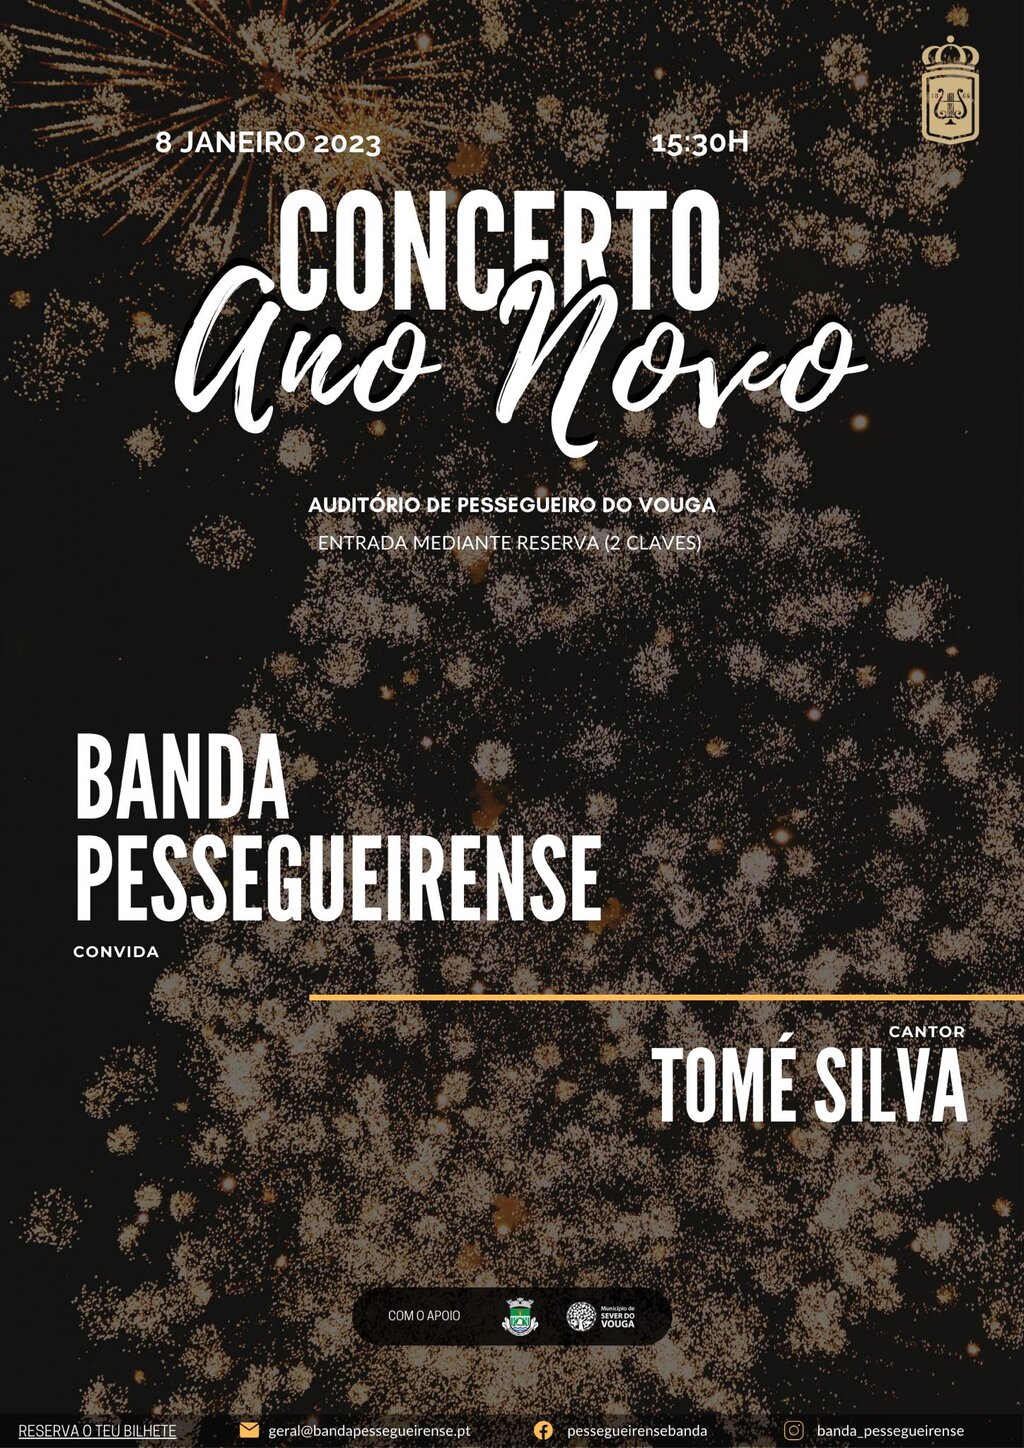 8 janeiro  - Concerto de Ano Novo - Banda Pessegueirense - Auditório de Pessegueiro